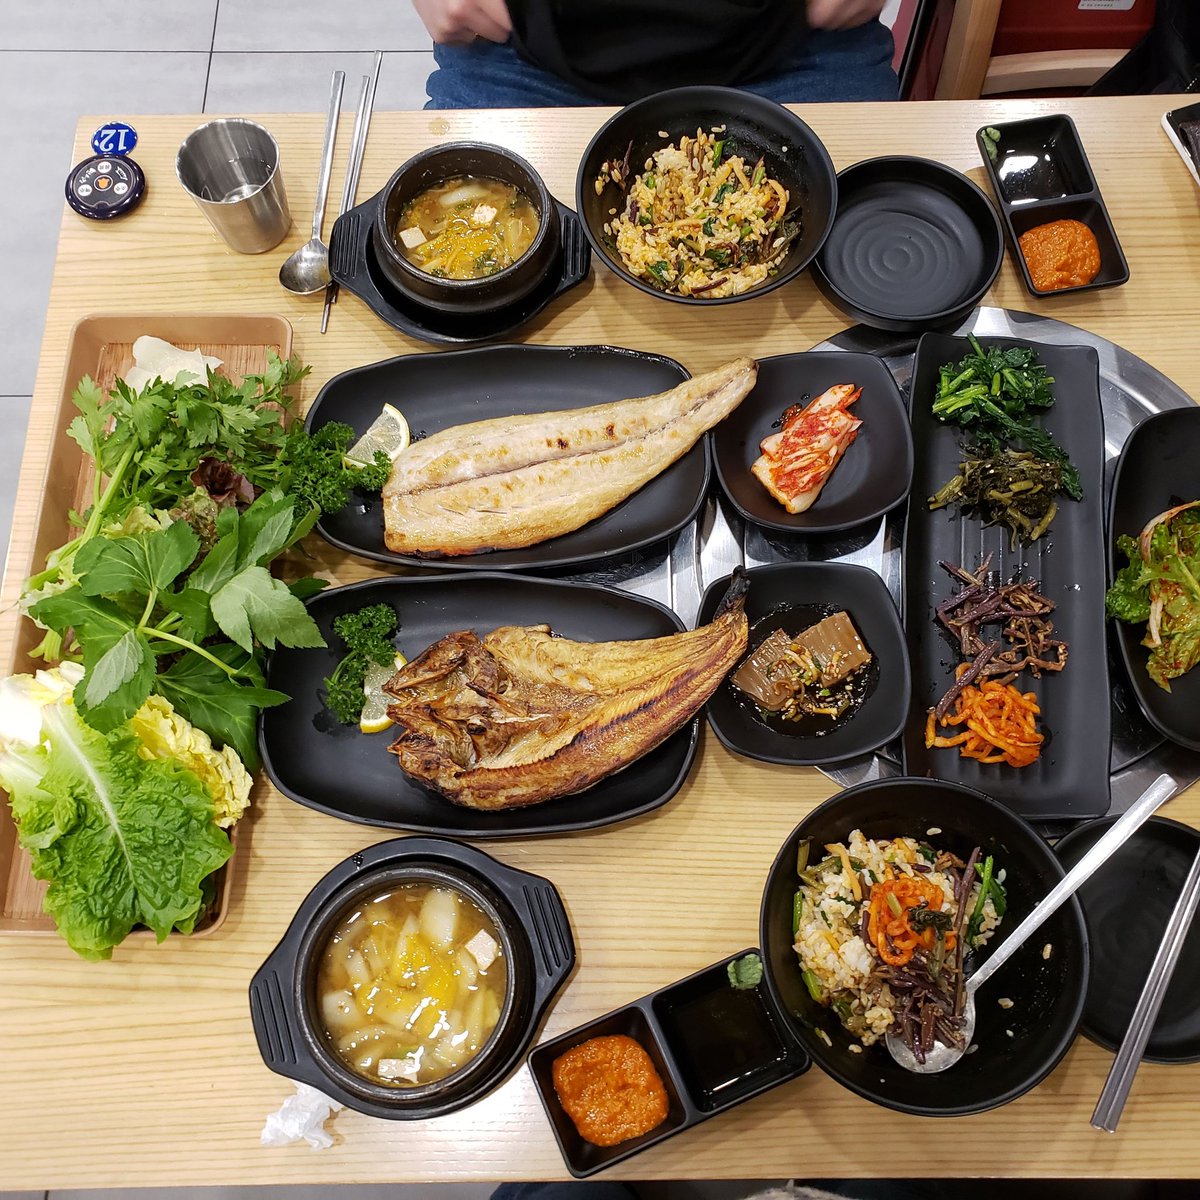 韓国人がめっちゃ食べるのに太らないのは食物繊維の摂取量が半端ないからなのではという説 もはや草の暴力 Togetter